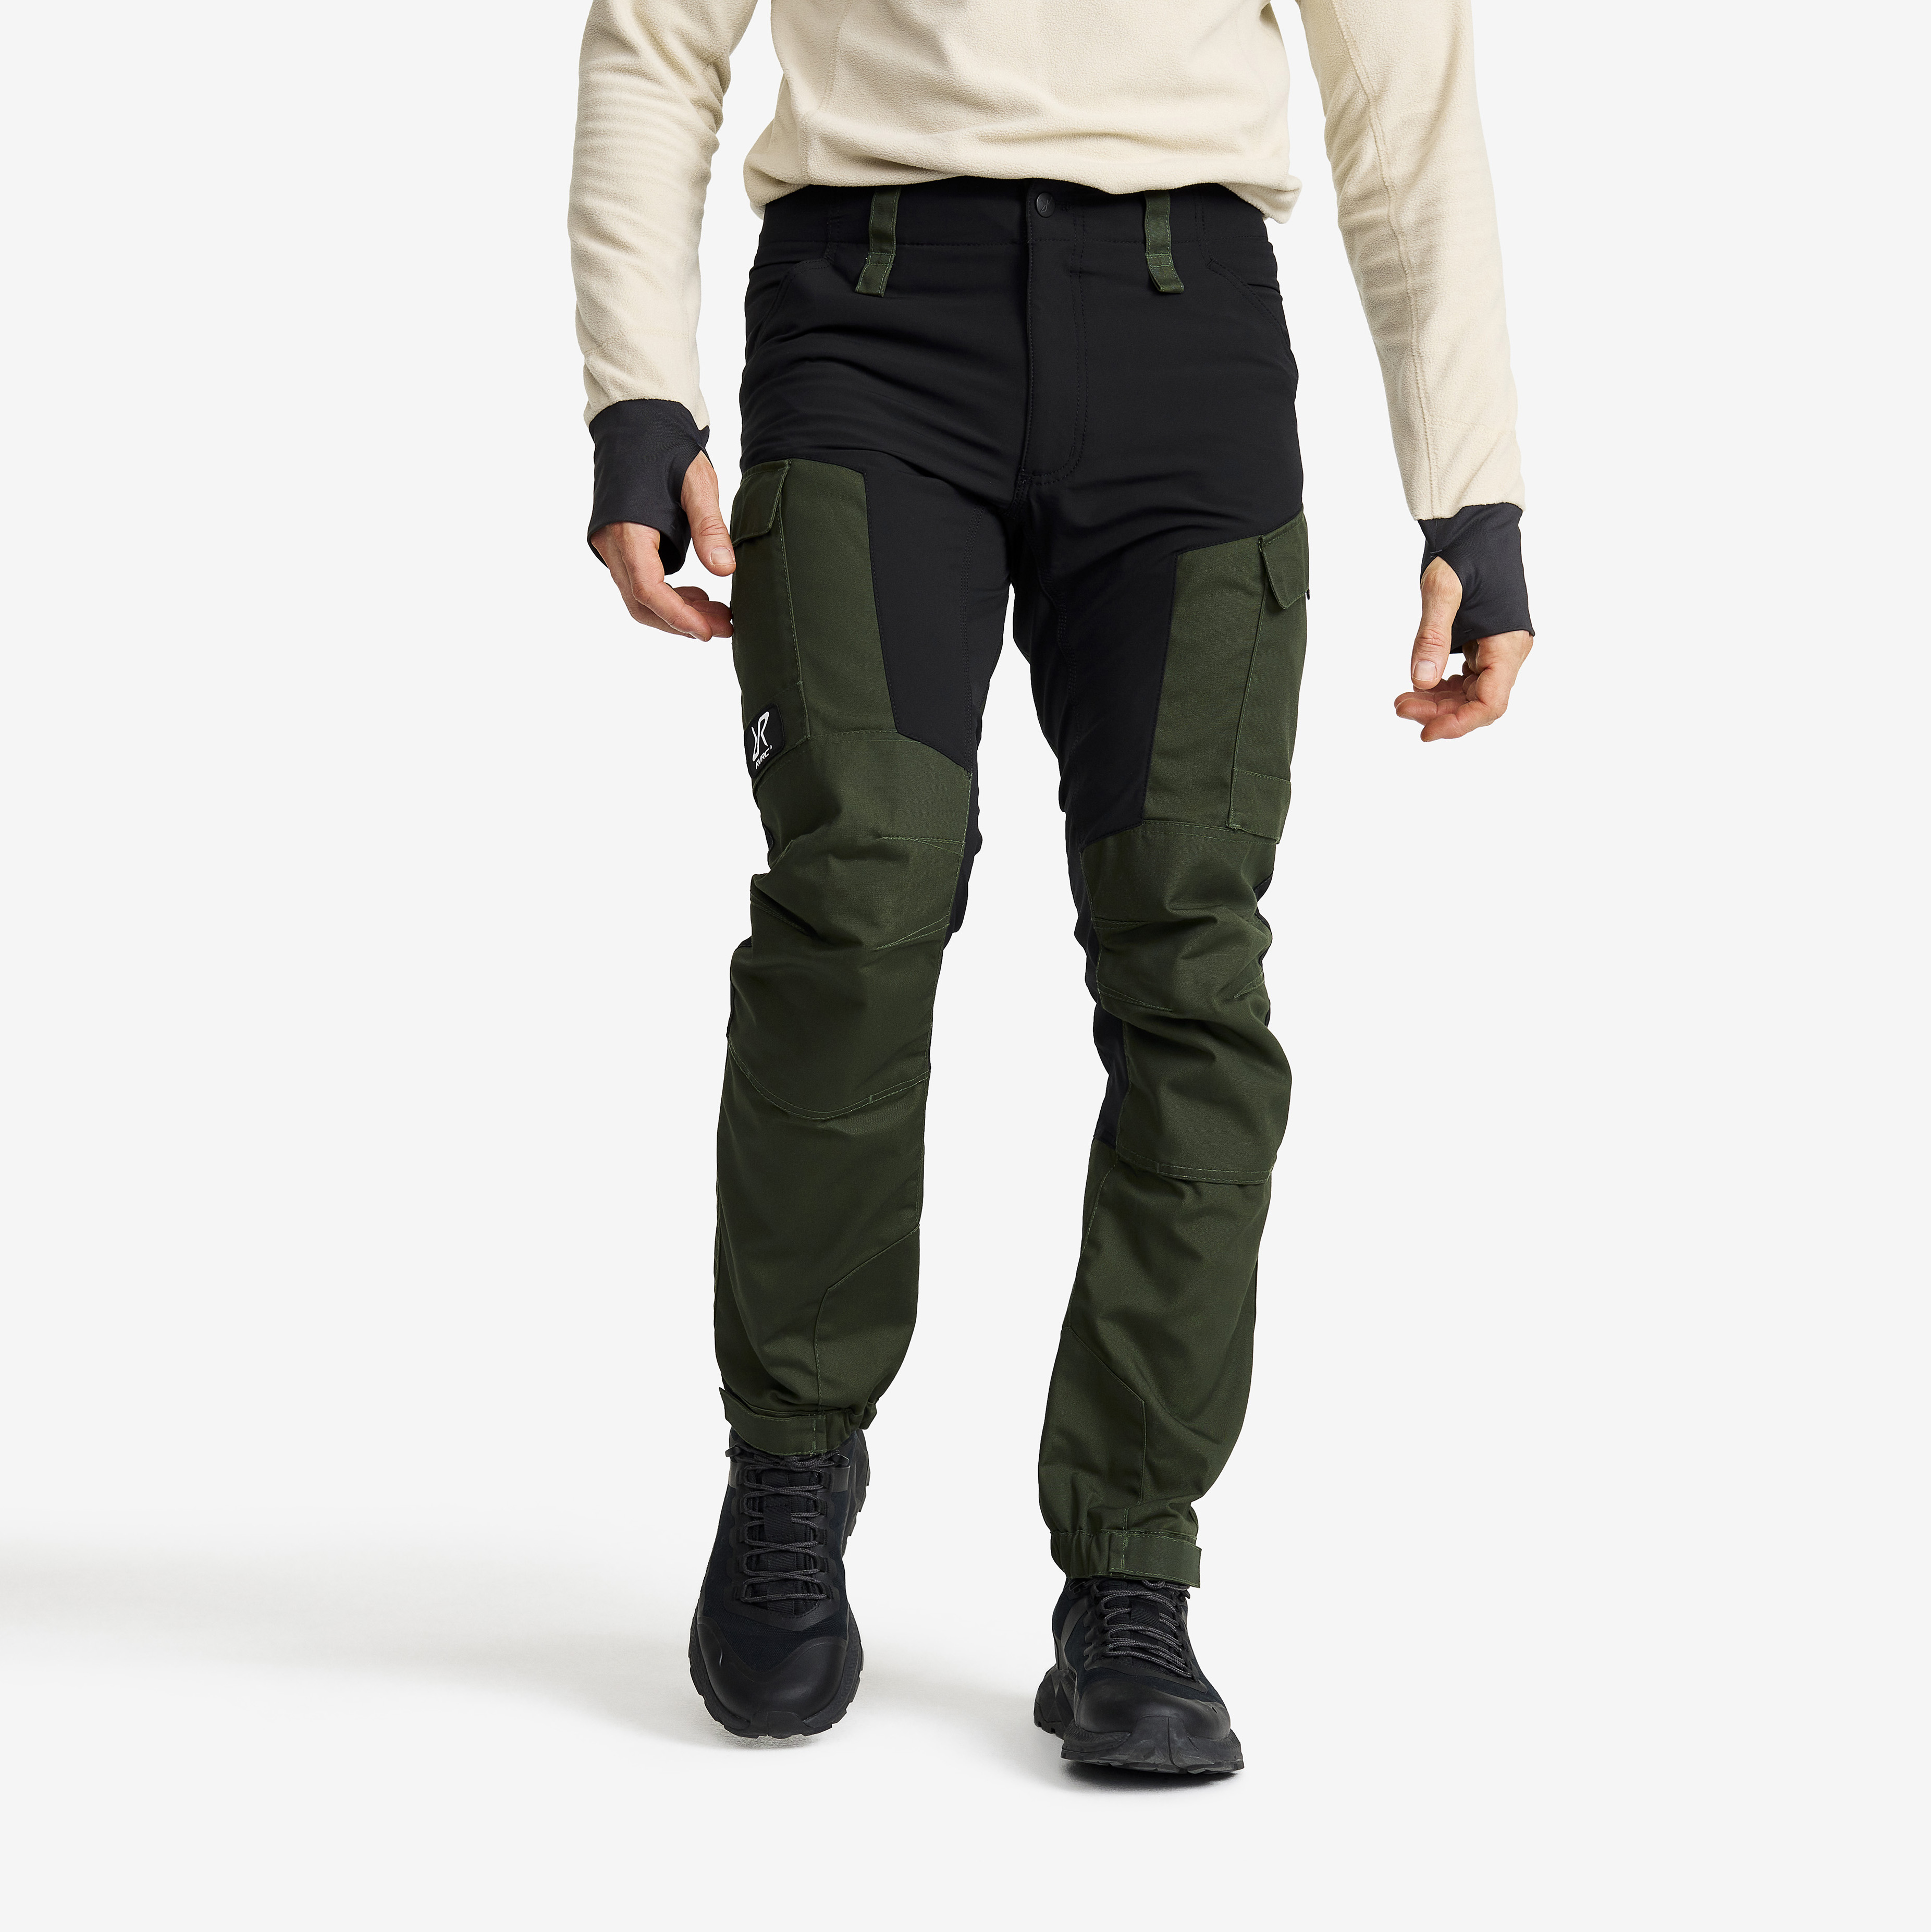 RVRC GP outdoor bukser for mænd i grøn